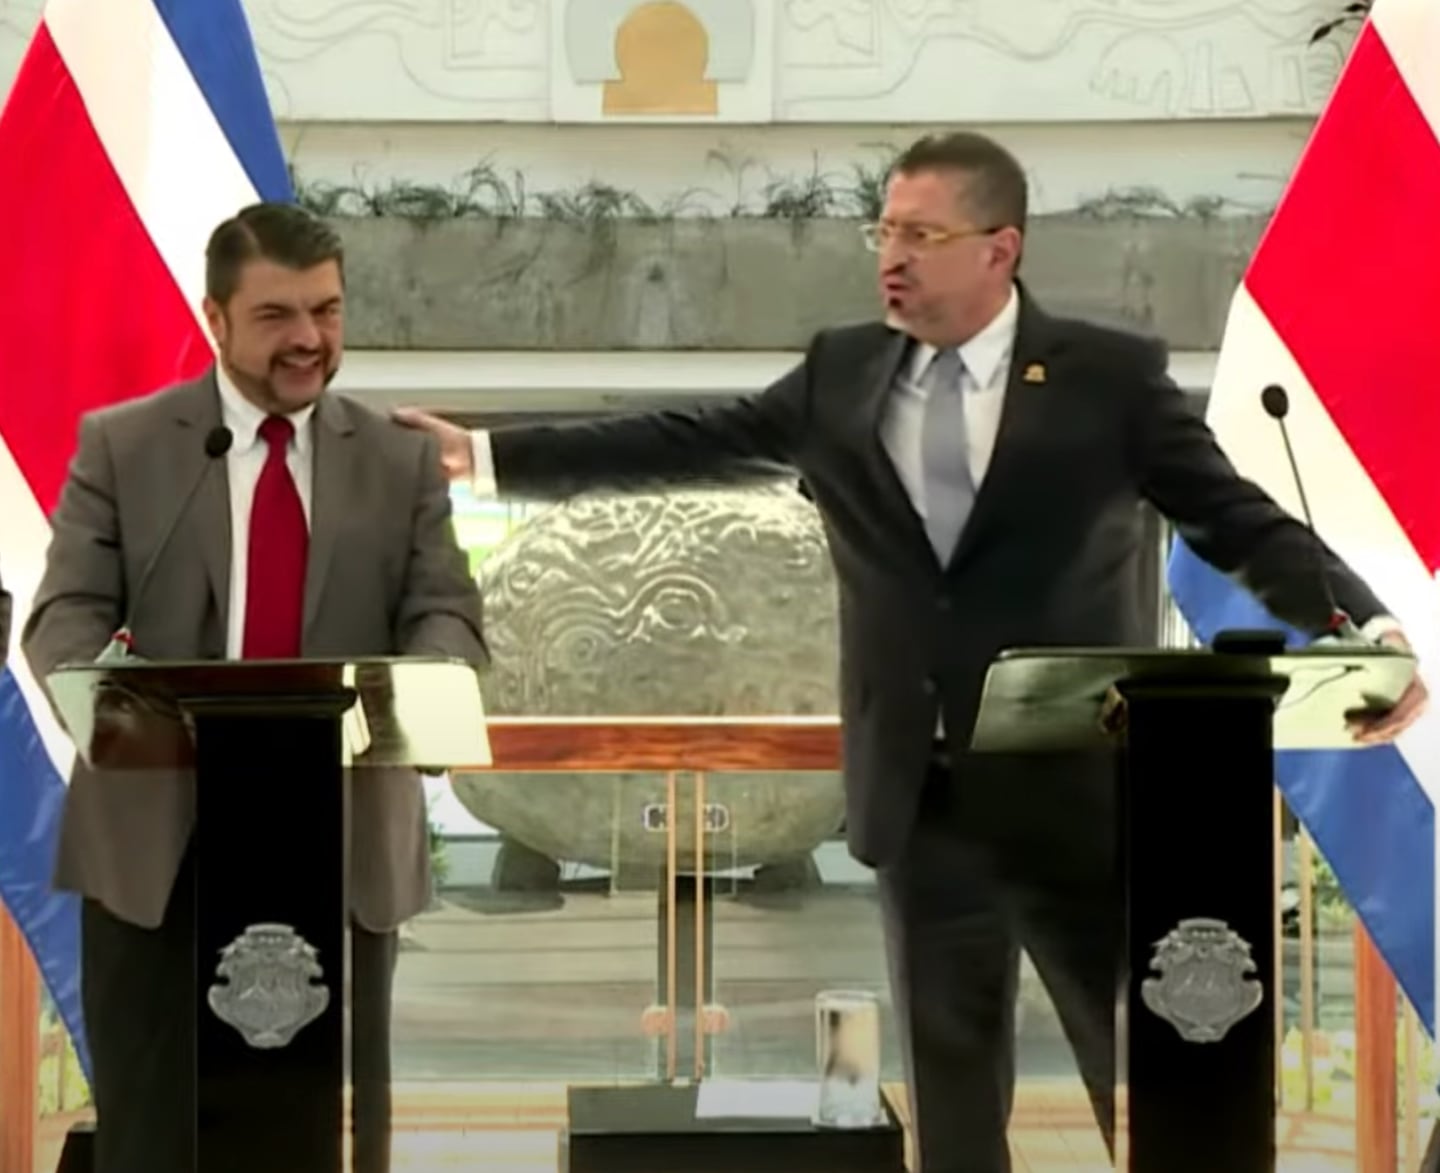 El presidente Rodrigo Chaves y el ministro de Seguridad, Mario Zamora, se refieren al decomiso de armas, durante la conferencia de prensa anterior al Consejo de Gobierno. Foto: Captura de pantalla